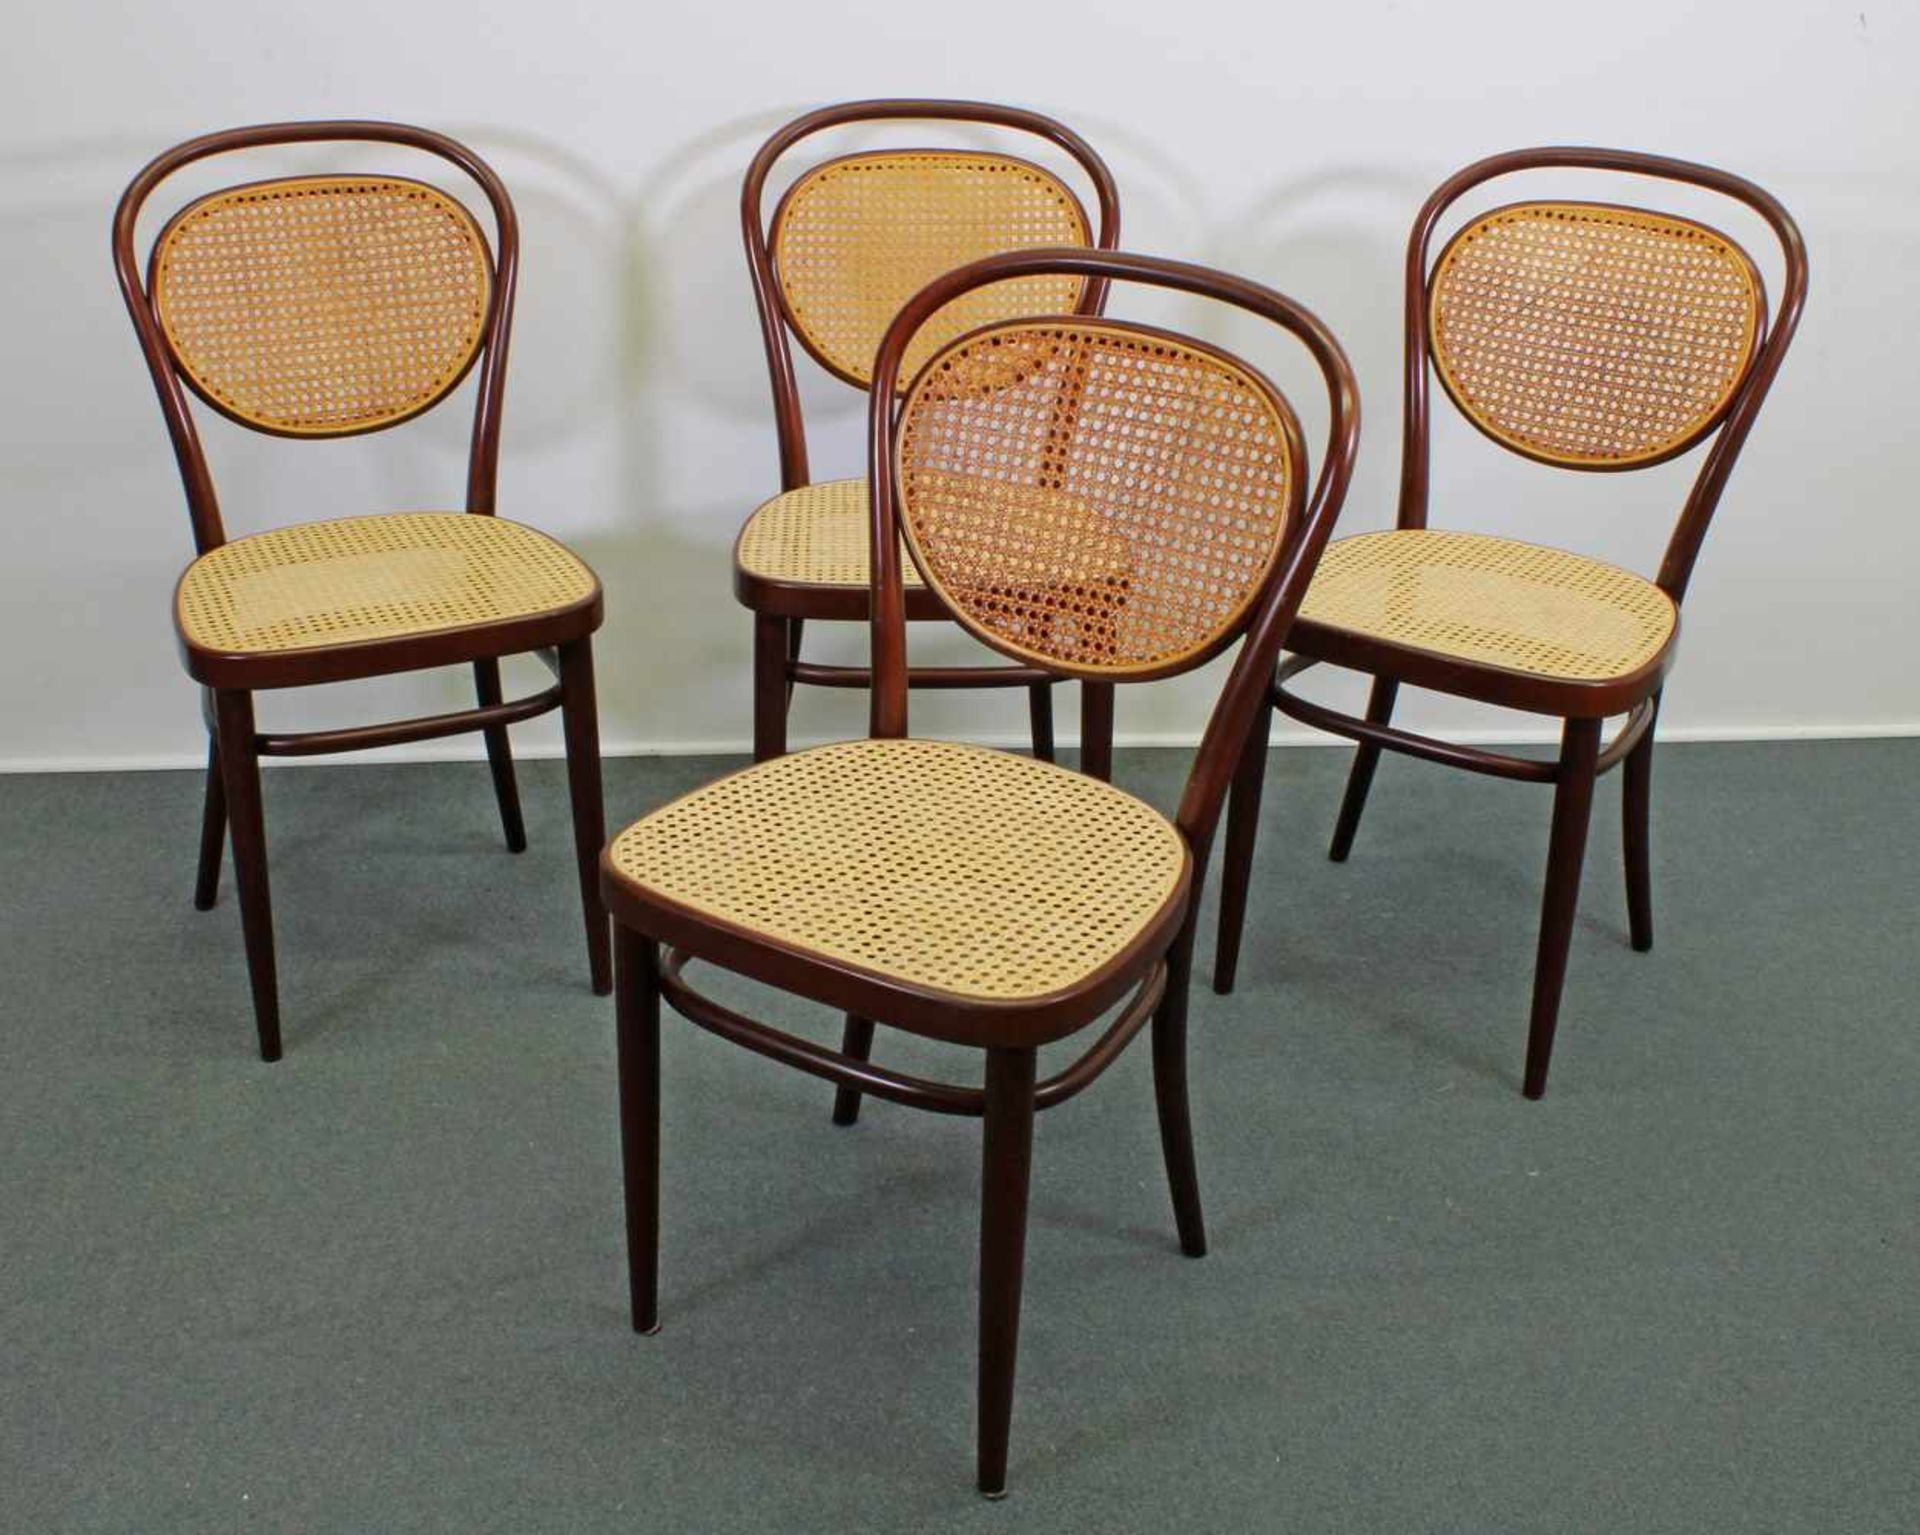 4 Kaffeehausstühle, Thonet, 1980er Jahre, Buchenbugholz, braun, Sitz und Rückenlehne mit Geflecht, - Image 2 of 2